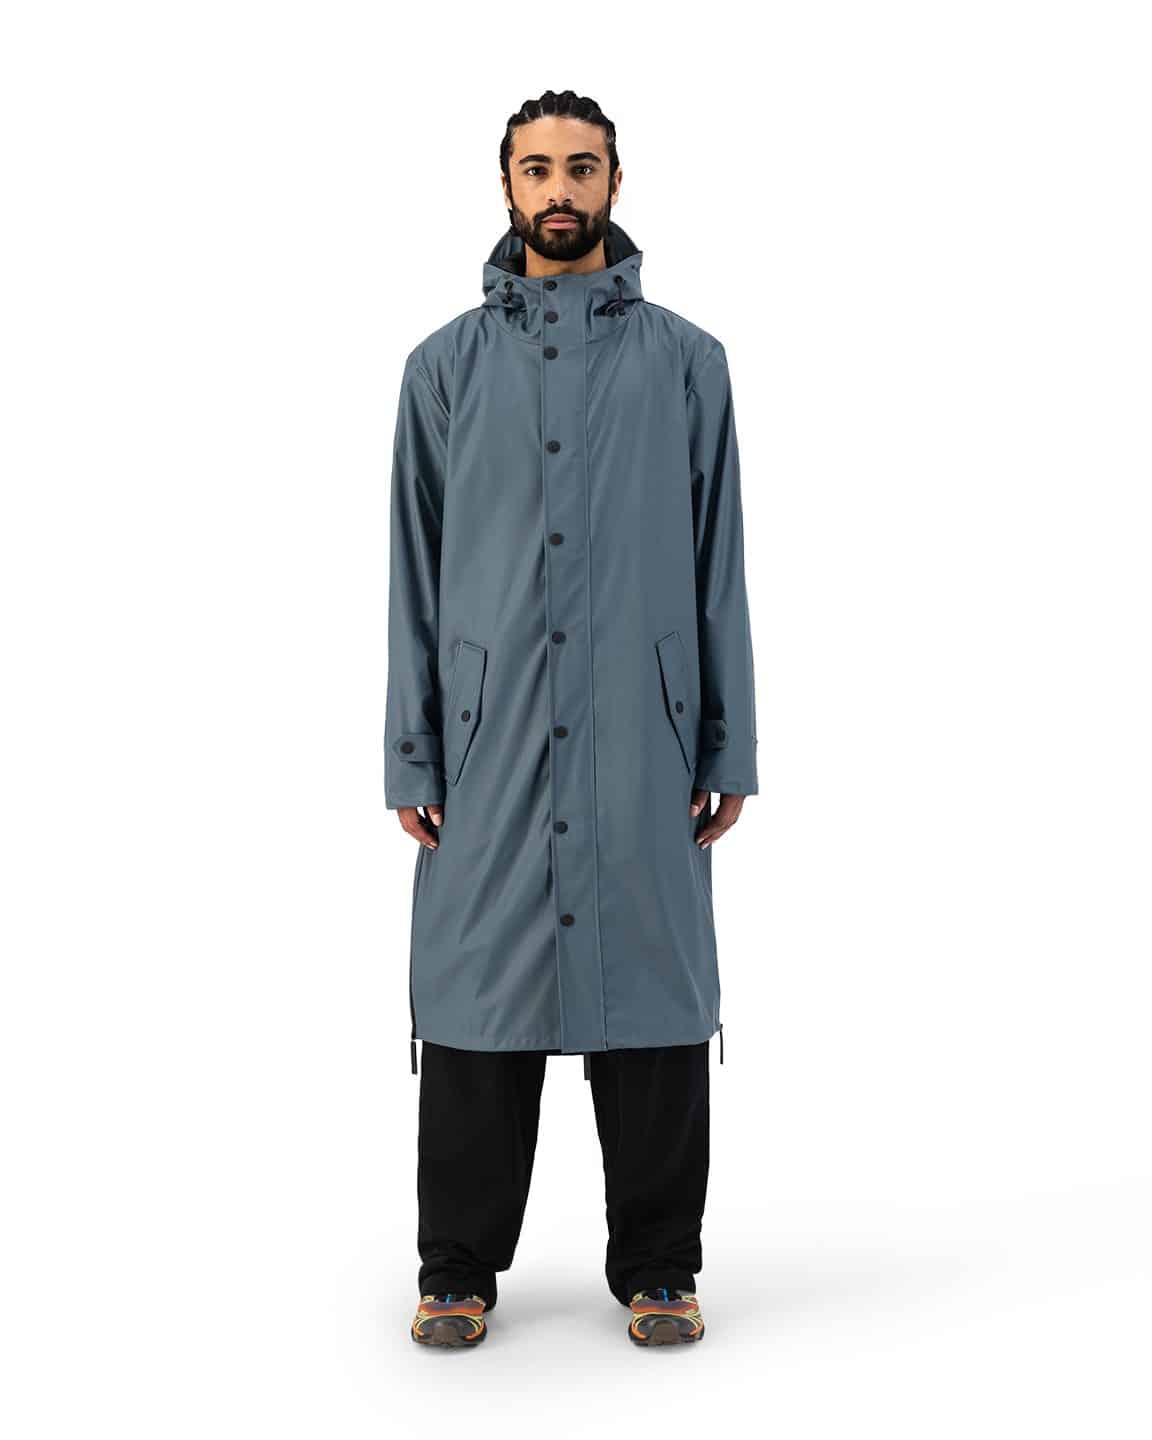 Original raincoat